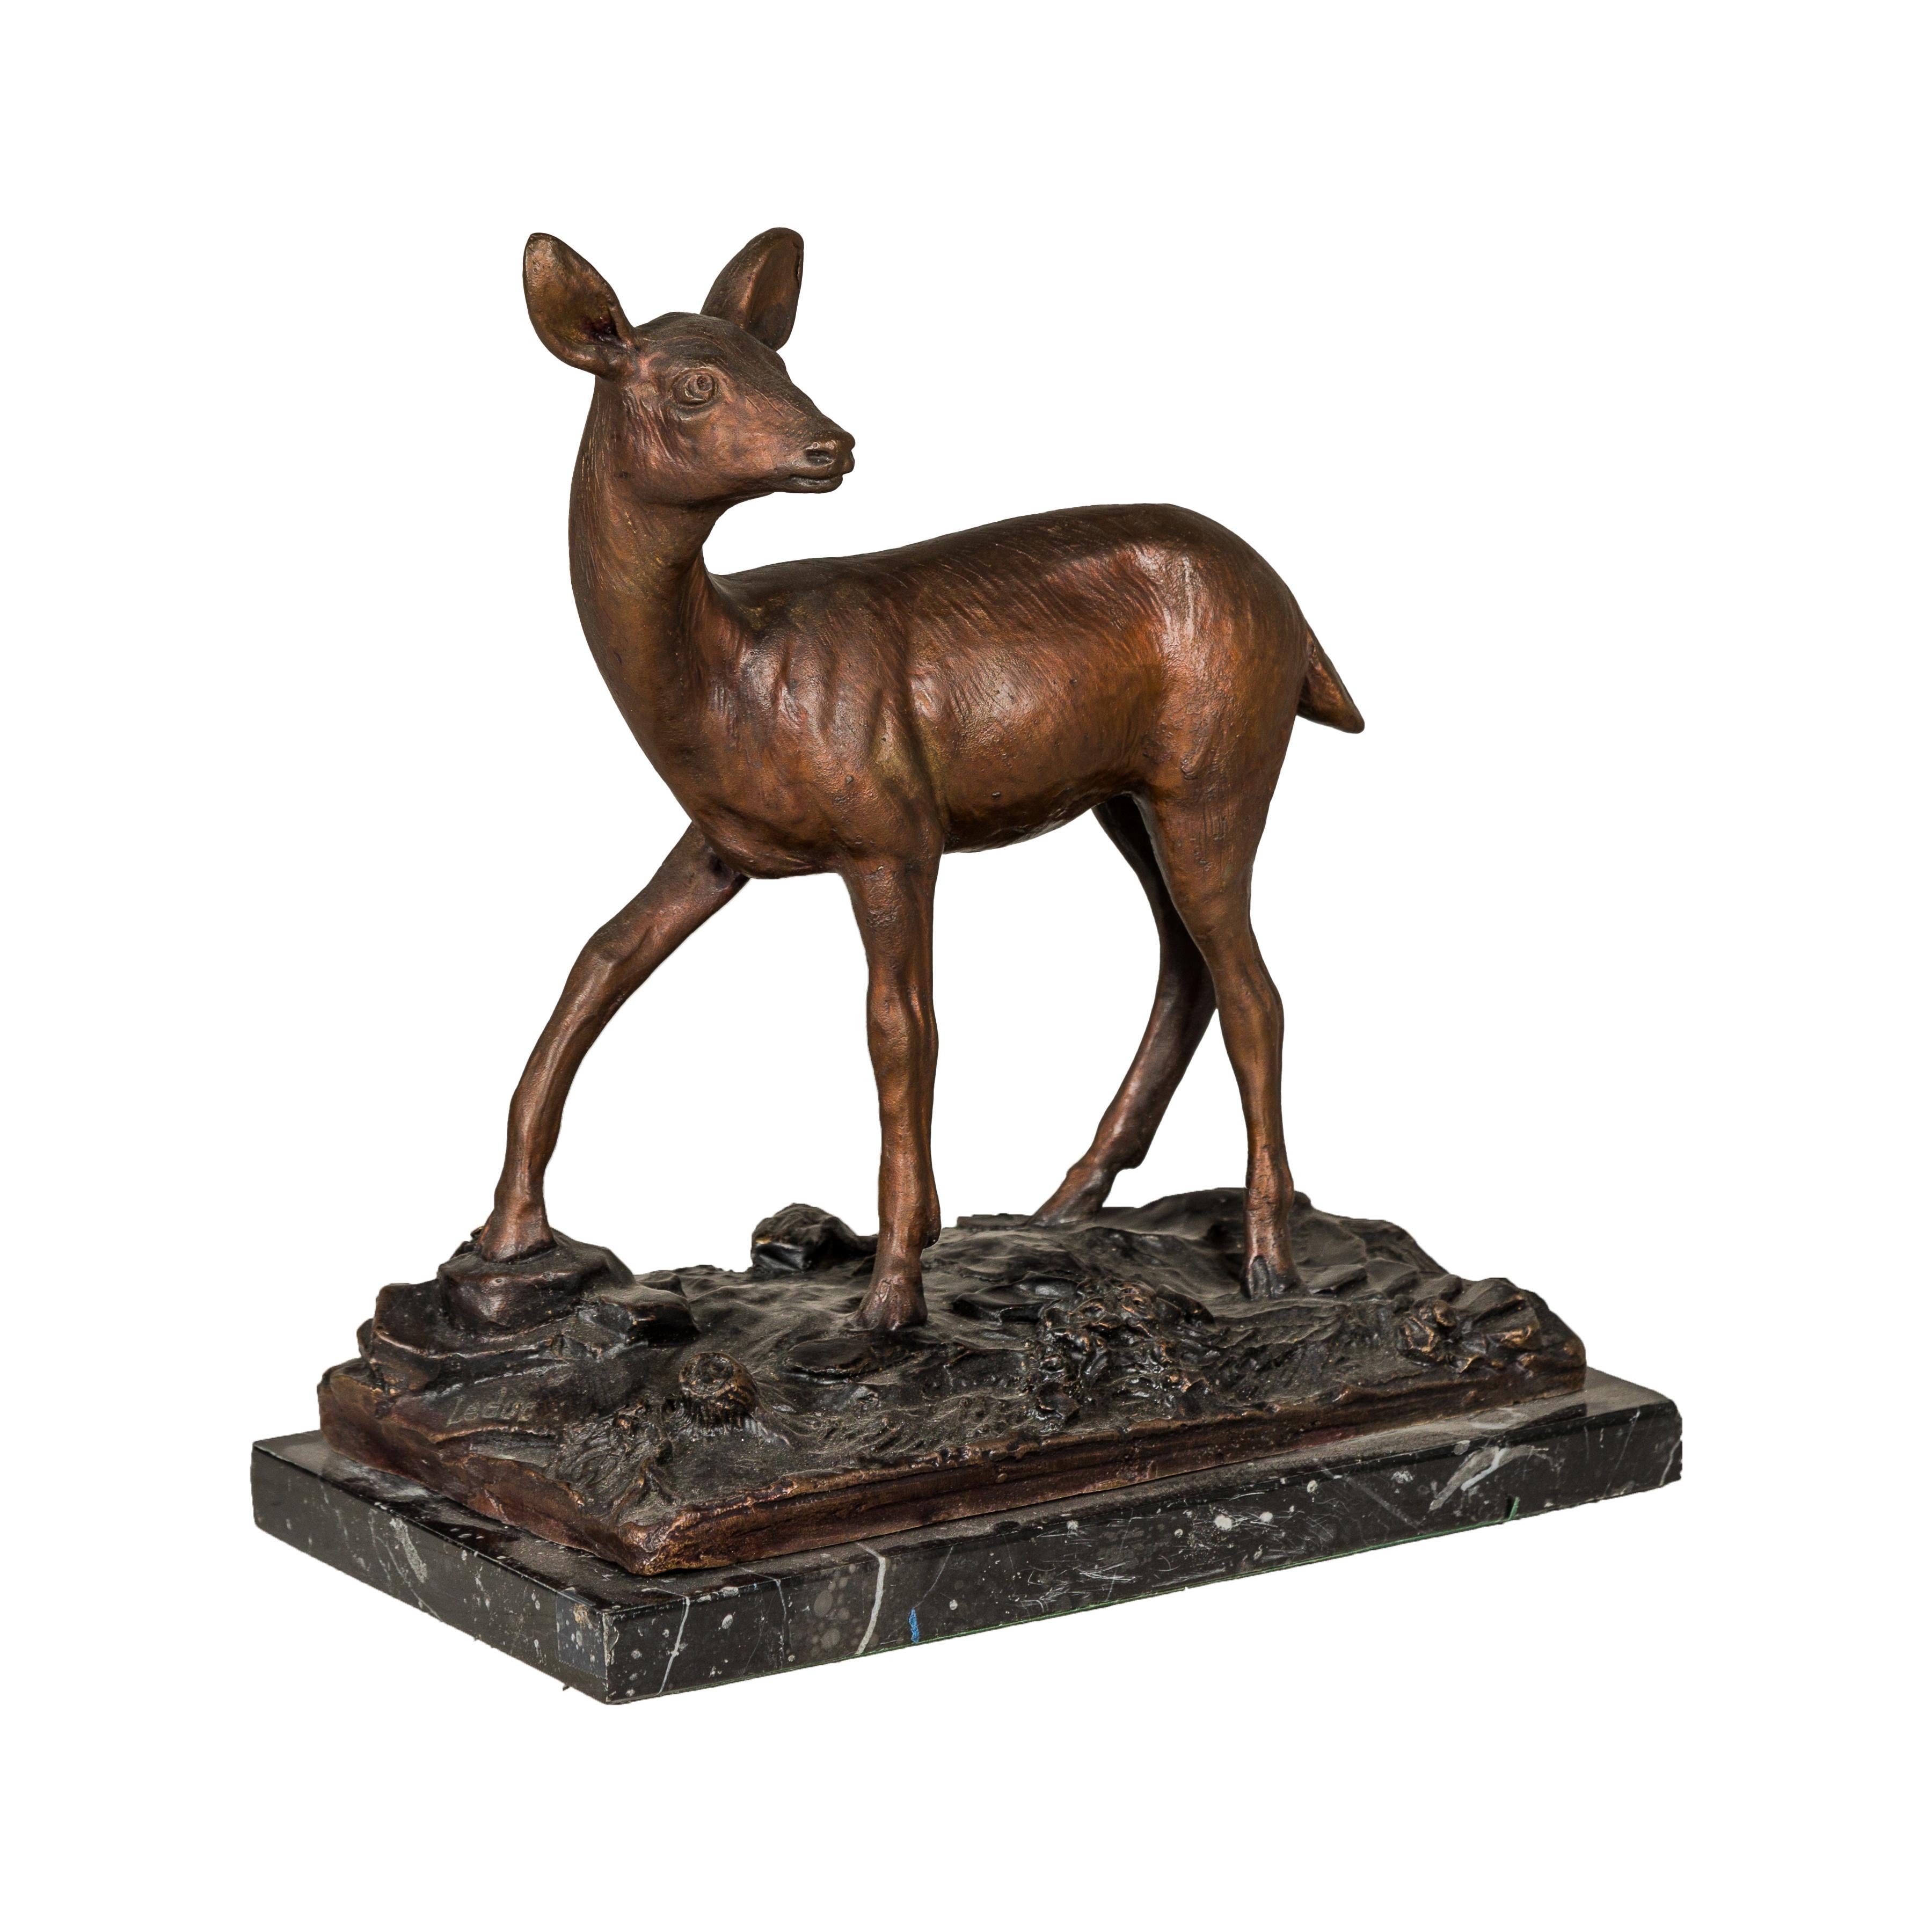 Skulptur eines Hirsches aus Bronze auf einem Sockel aus Bronze und schwarzem Marmor. Diese Hirschskulptur aus Bronze im Vintage-Stil, die elegant auf einem einzigartigen Sockel aus Bronze und schwarzem Marmor steht, ist eine großartige Mischung aus